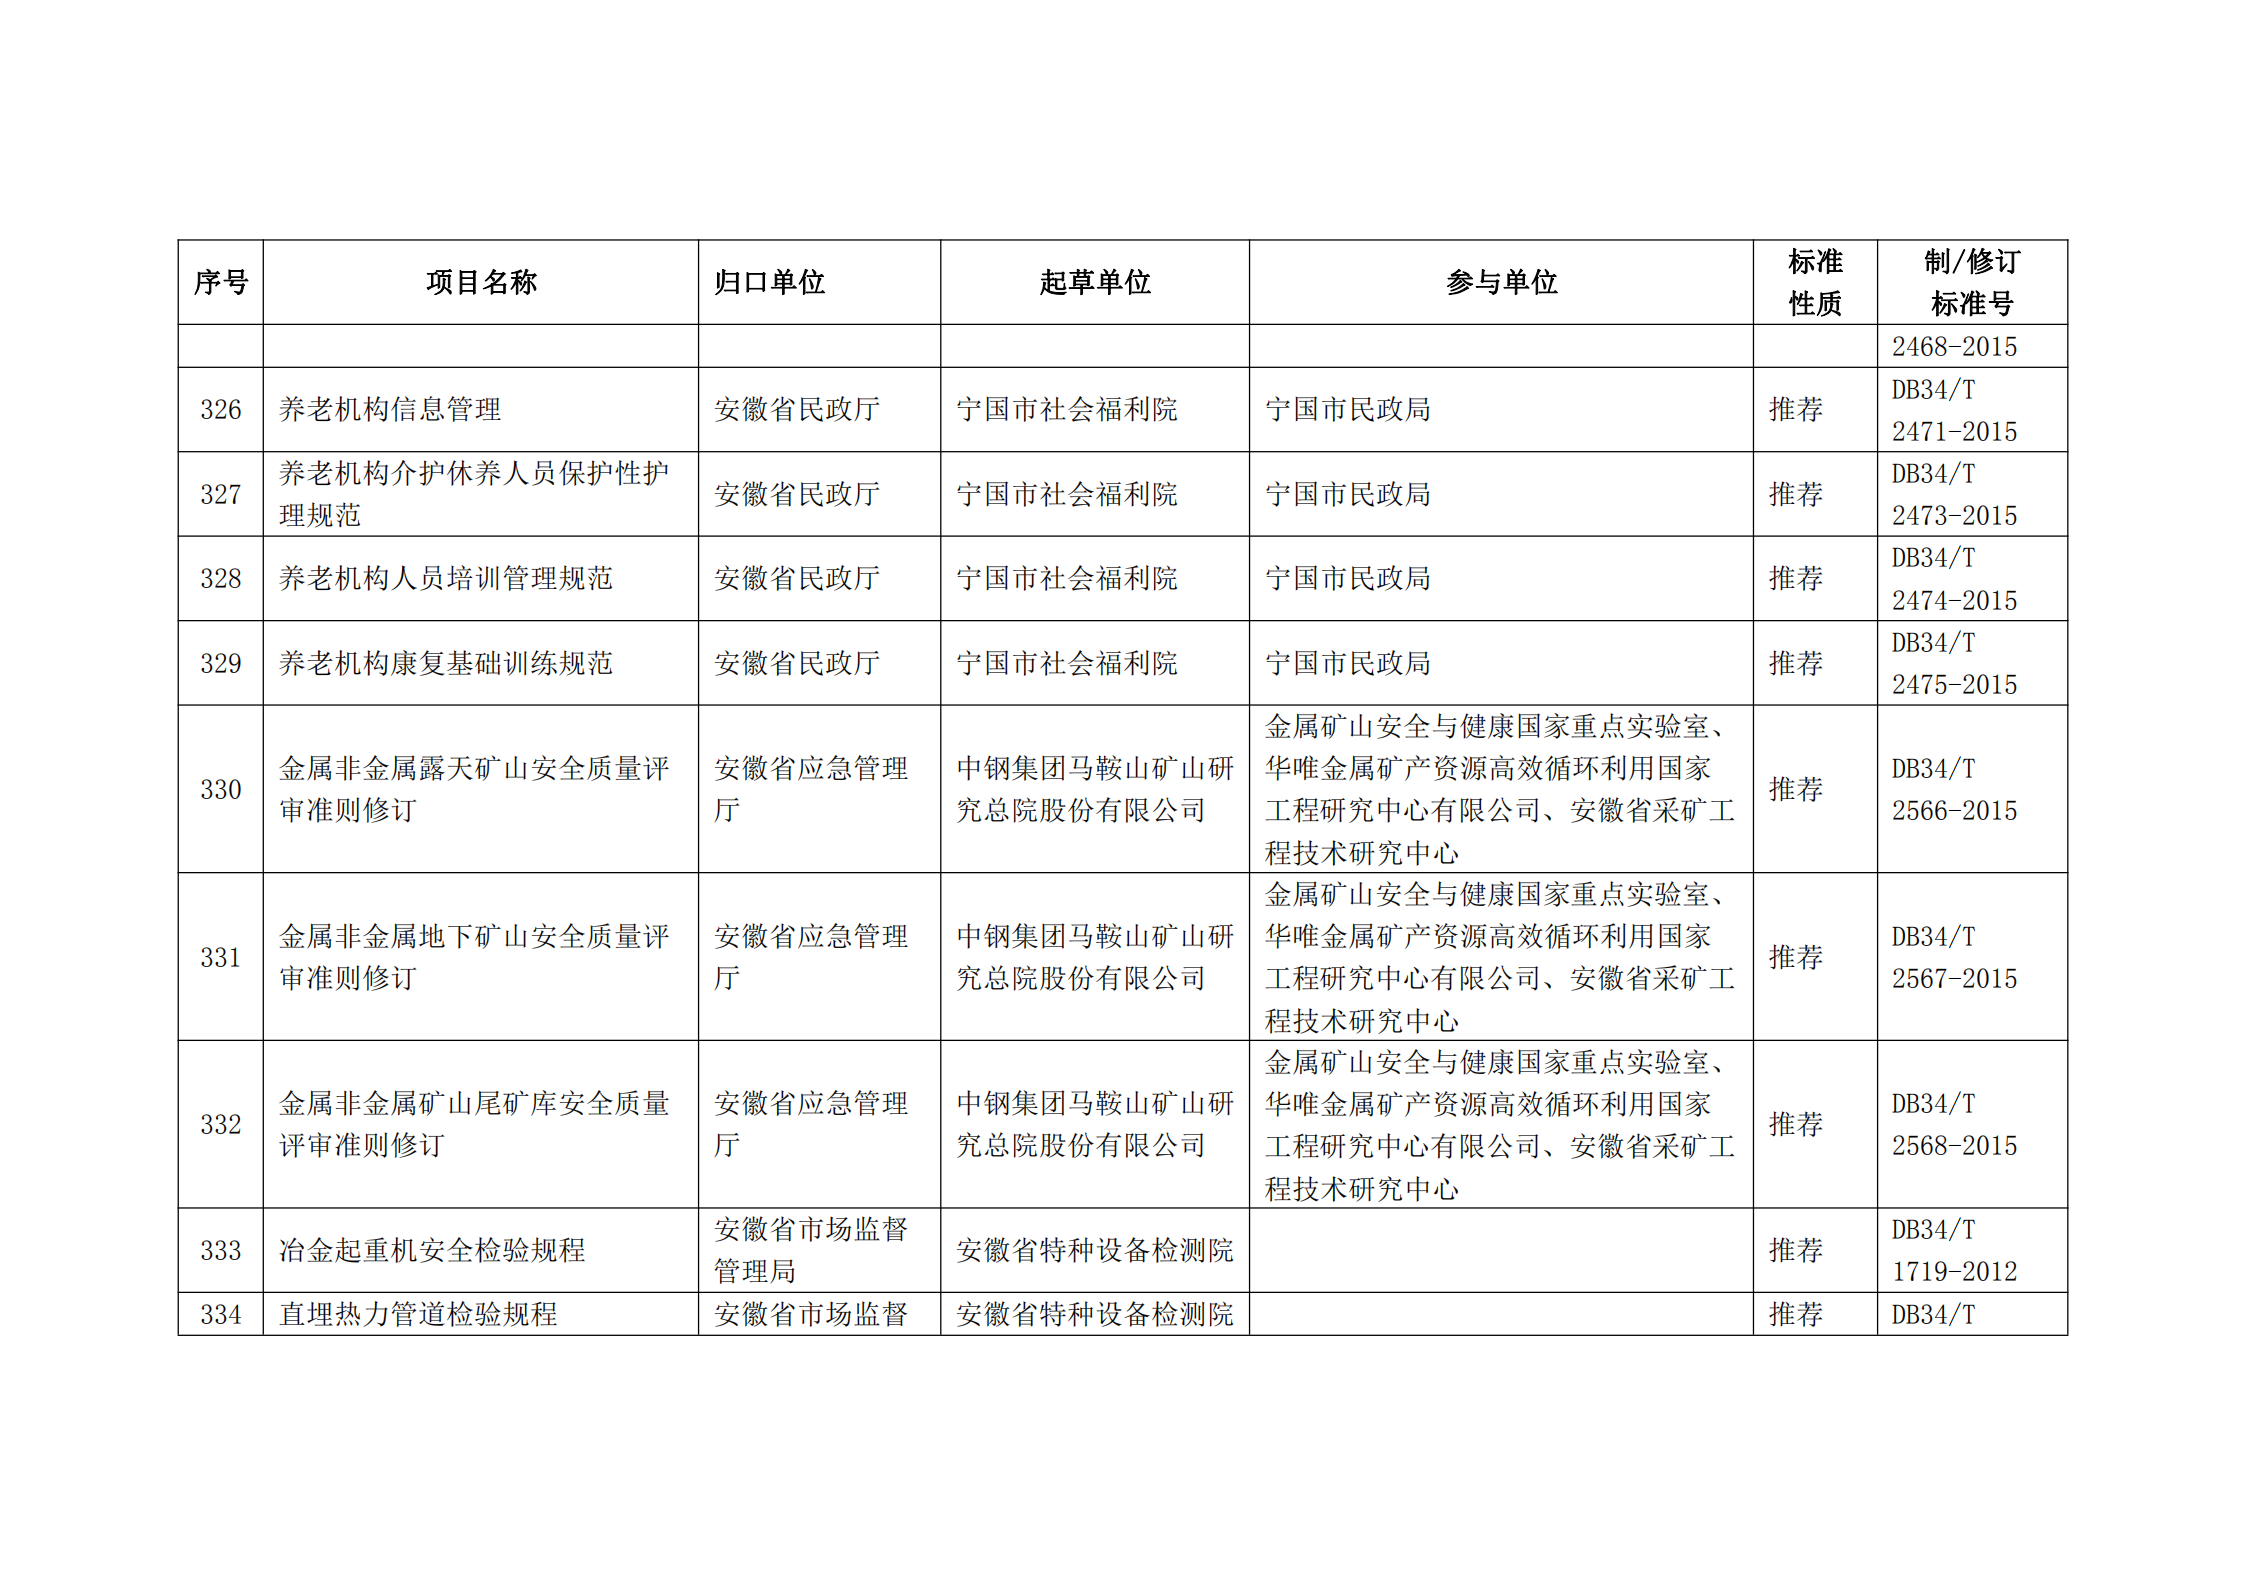 2020 年第二批安徽省地方标准制、修订计划项目汇总表(图36)